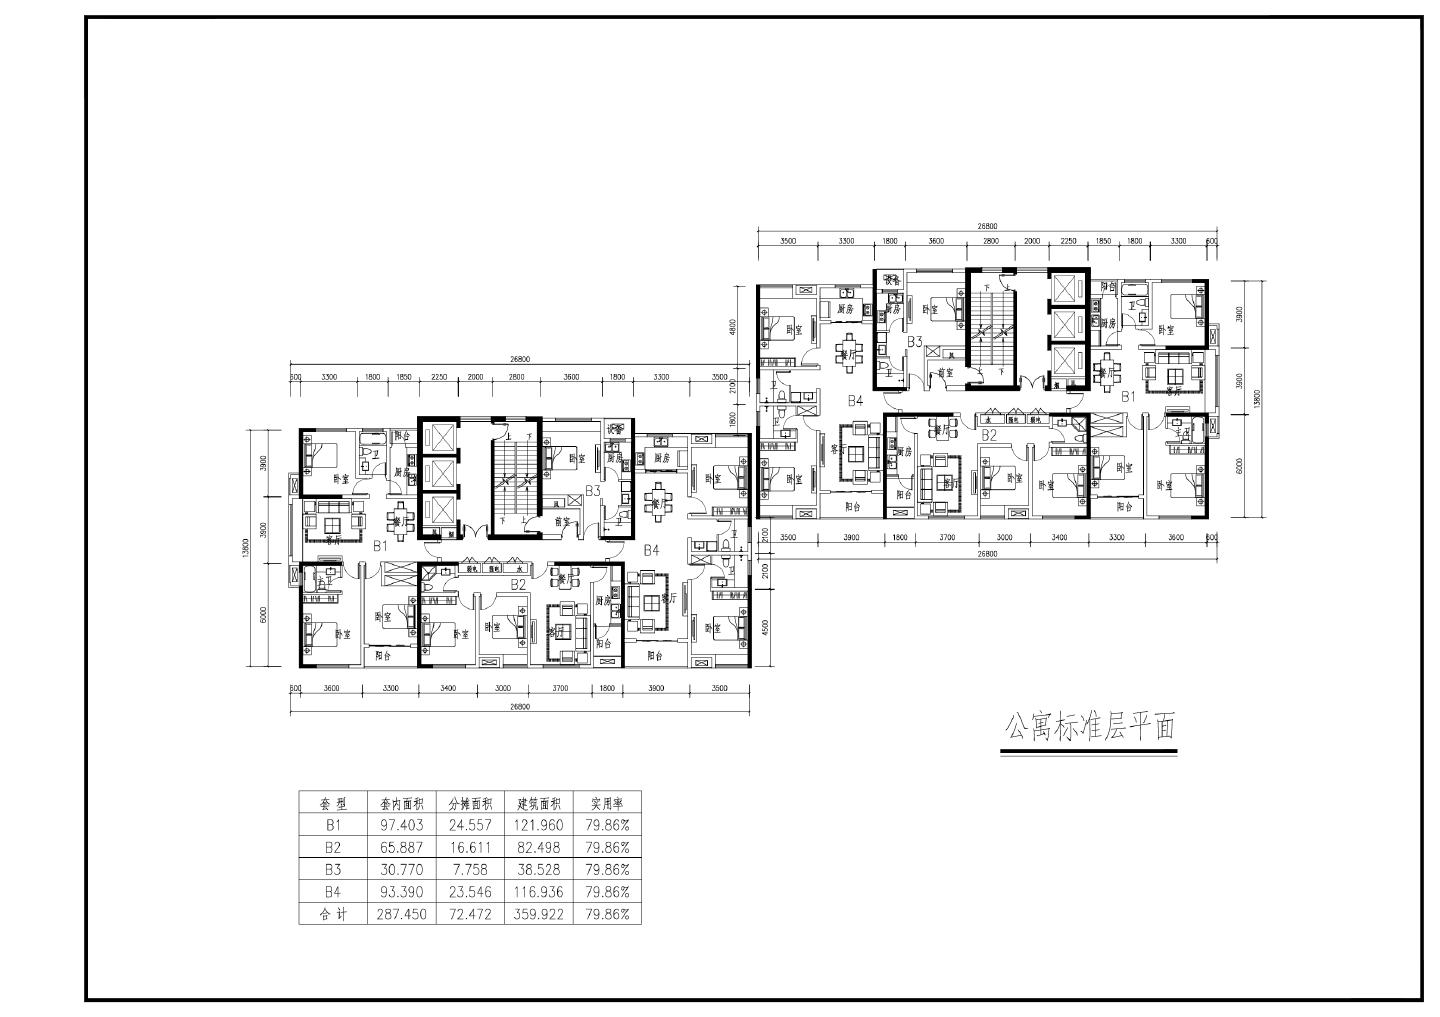 郑州二马路地块开发项目-方案一公寓标准层户型平面CAD图